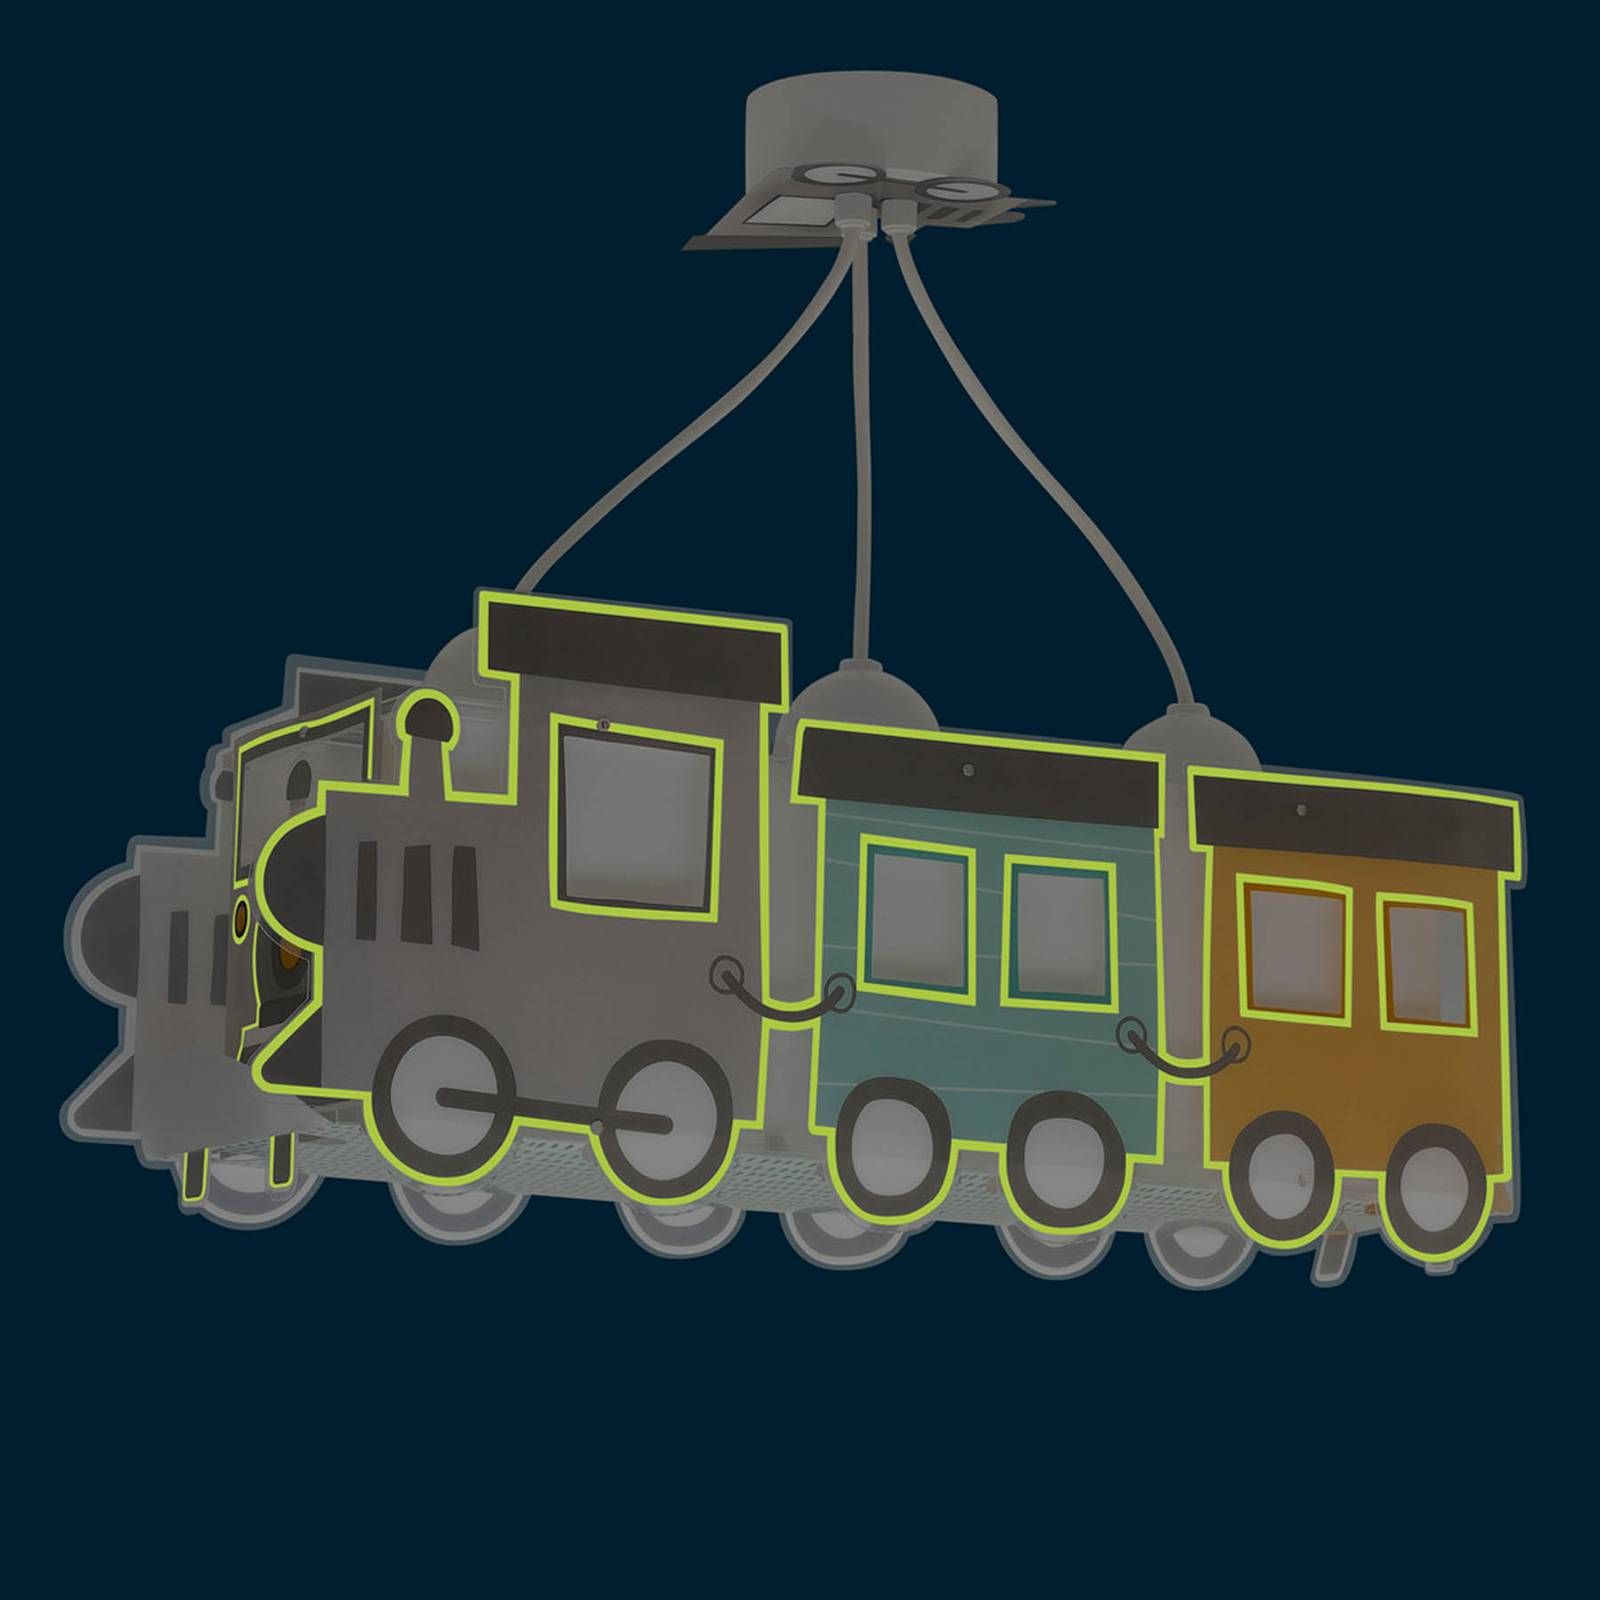 Dalber Night Train závesné svetlo ako lokomotíva, Detská izba, plast, E27, 15W, P: 50 cm, L: 13.5 cm, K: 20cm